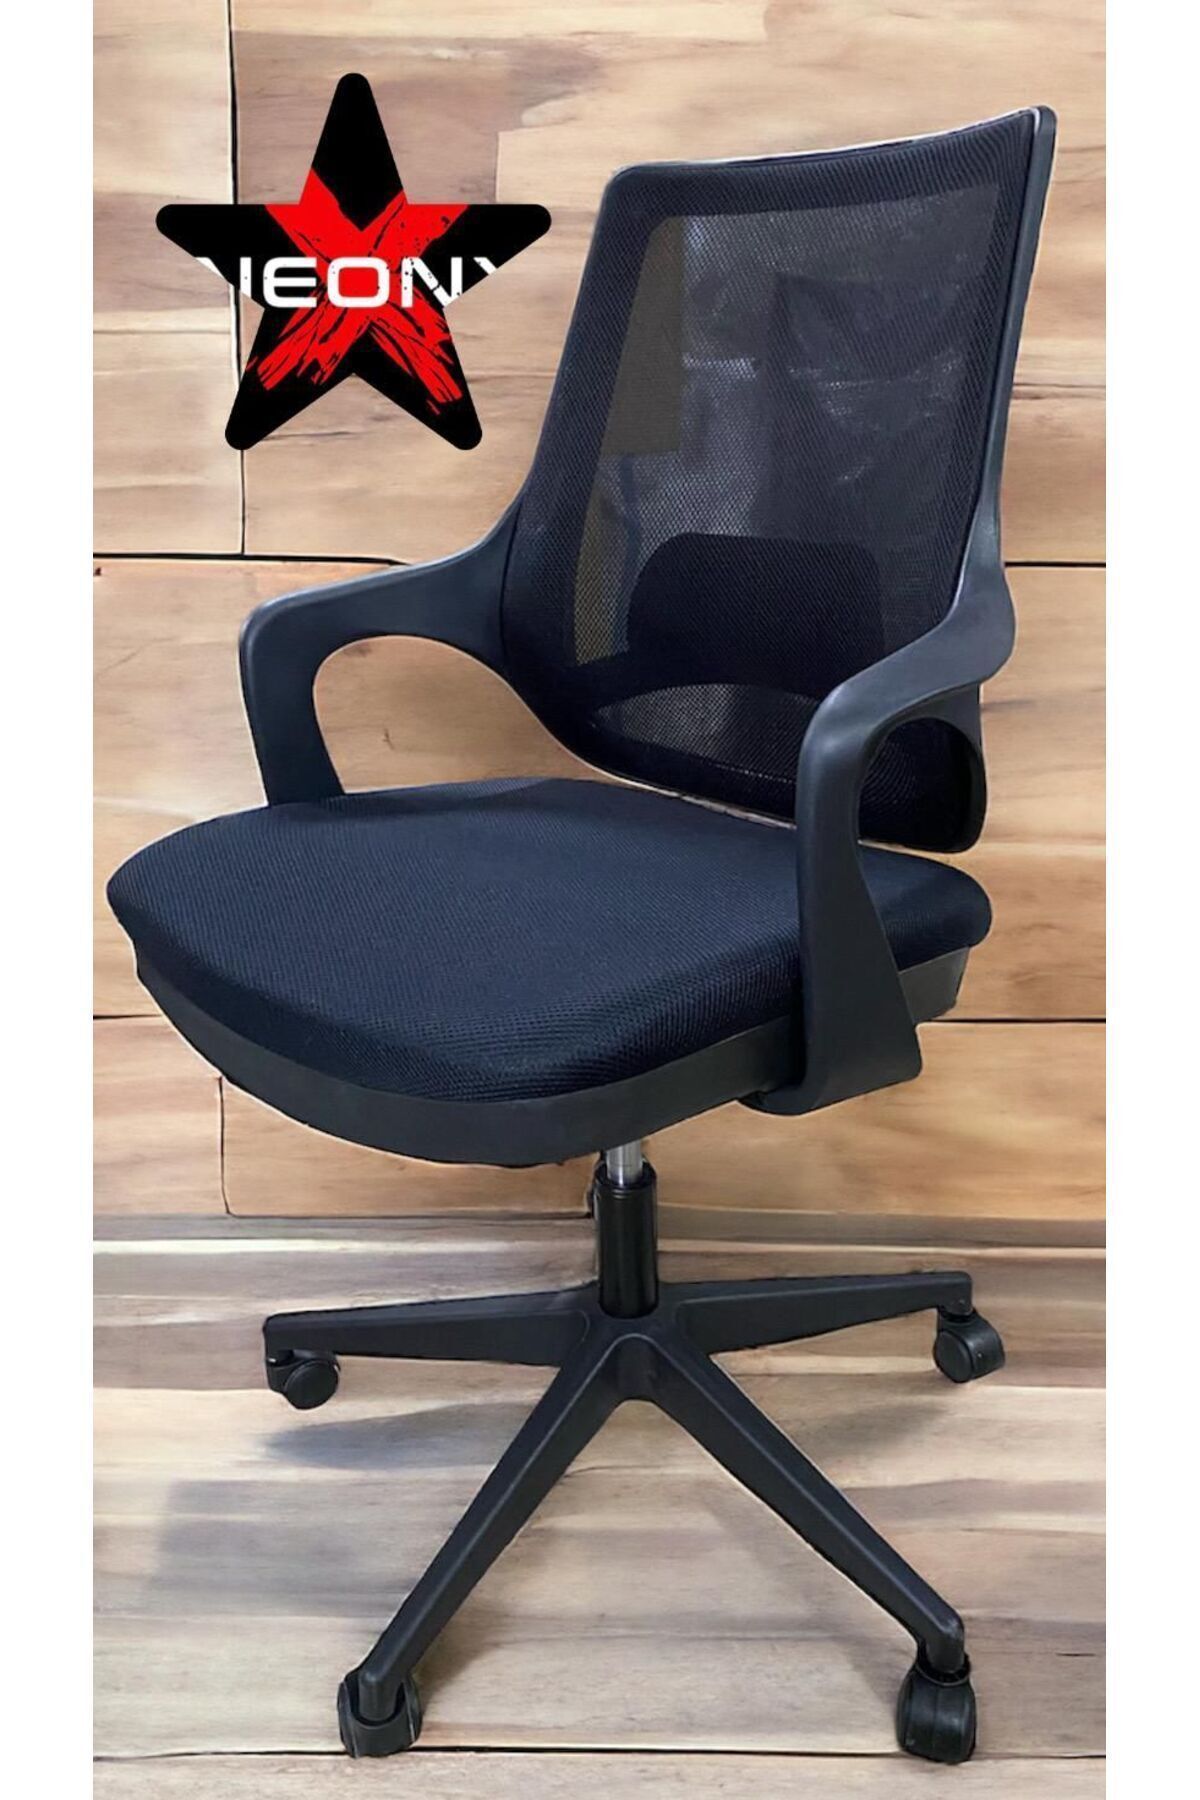 neonx / Yaren Çalışma Koltuğu / Ofis Sandalyesi / Bilgisayar Koltuğu